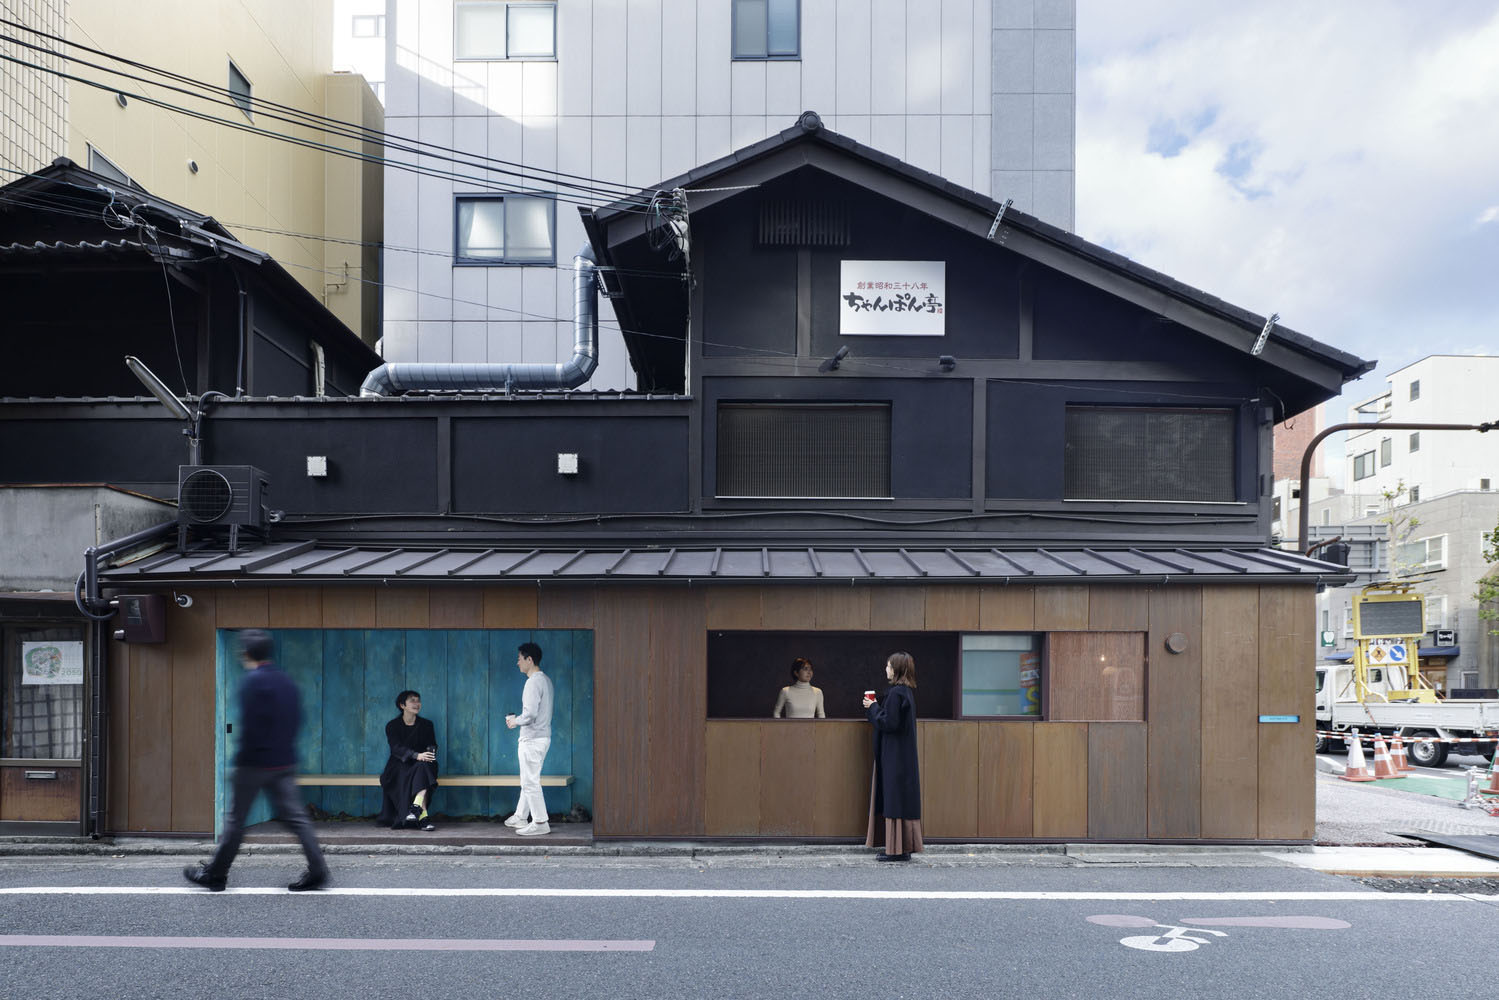 日本,京都,咖啡廳設計案例,極簡主義,街邊店,10㎡,咖啡廳設計,G architects studio,咖啡店設計